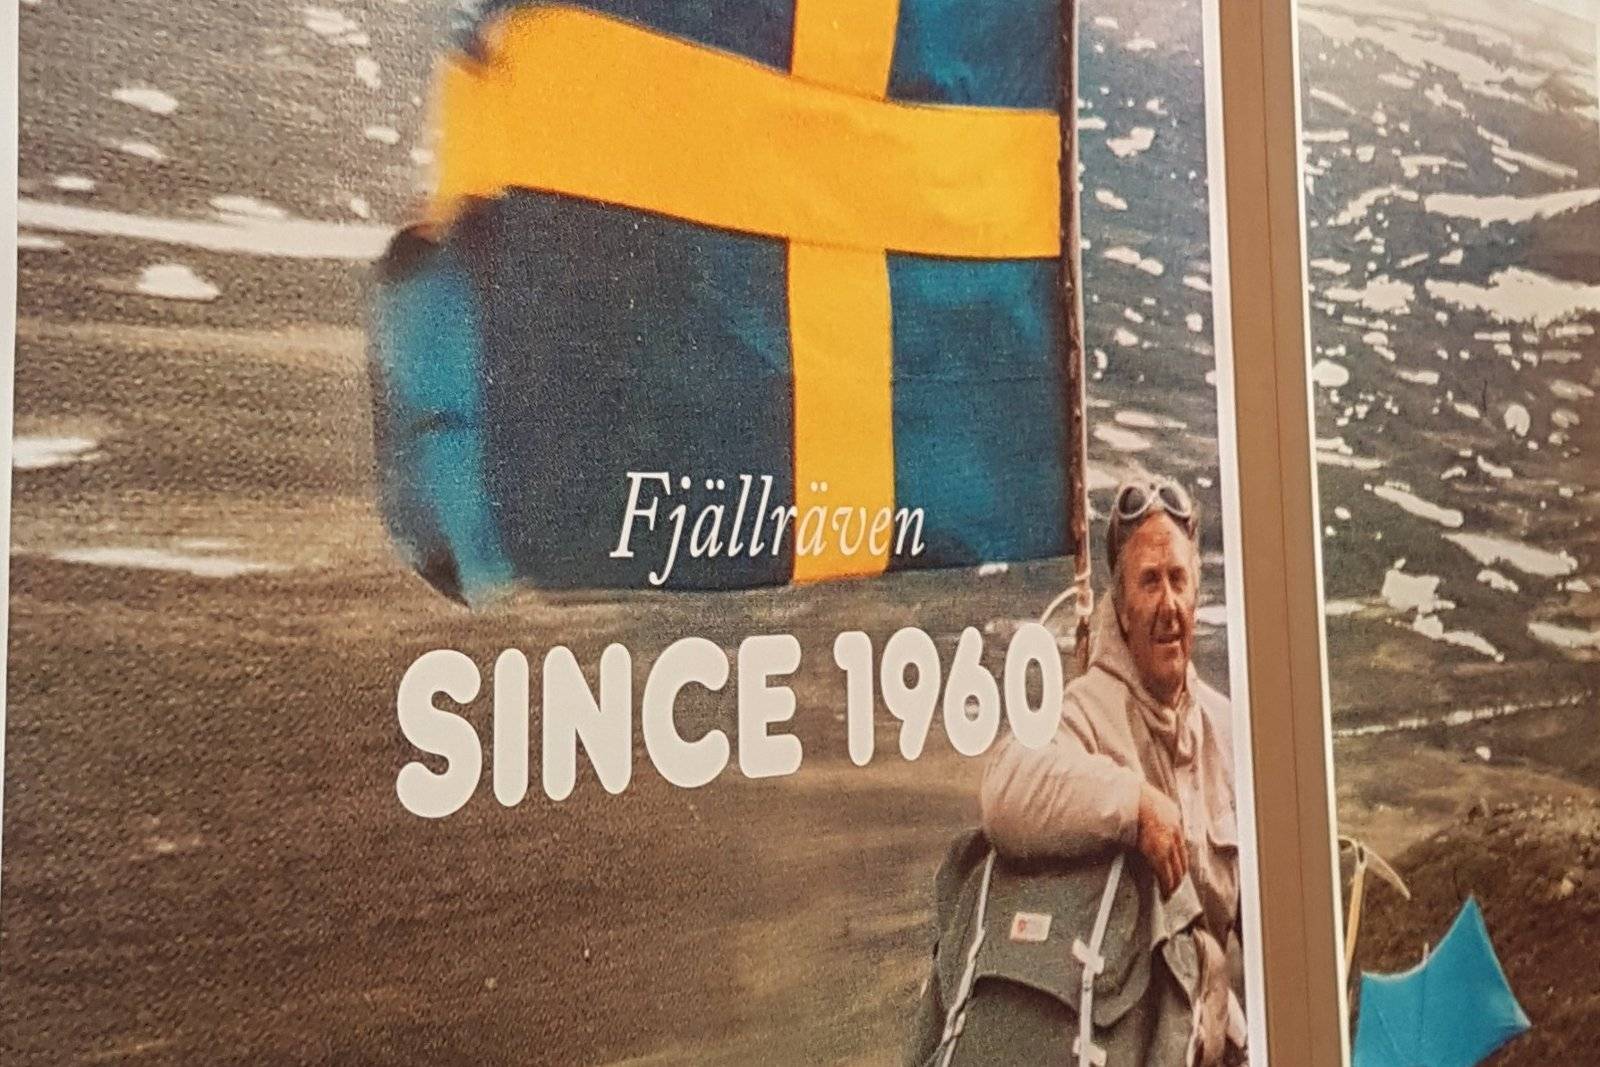 Fjällräven Gründer Åke Nordin in Outdoor Landschaft und schwedischer Flagge